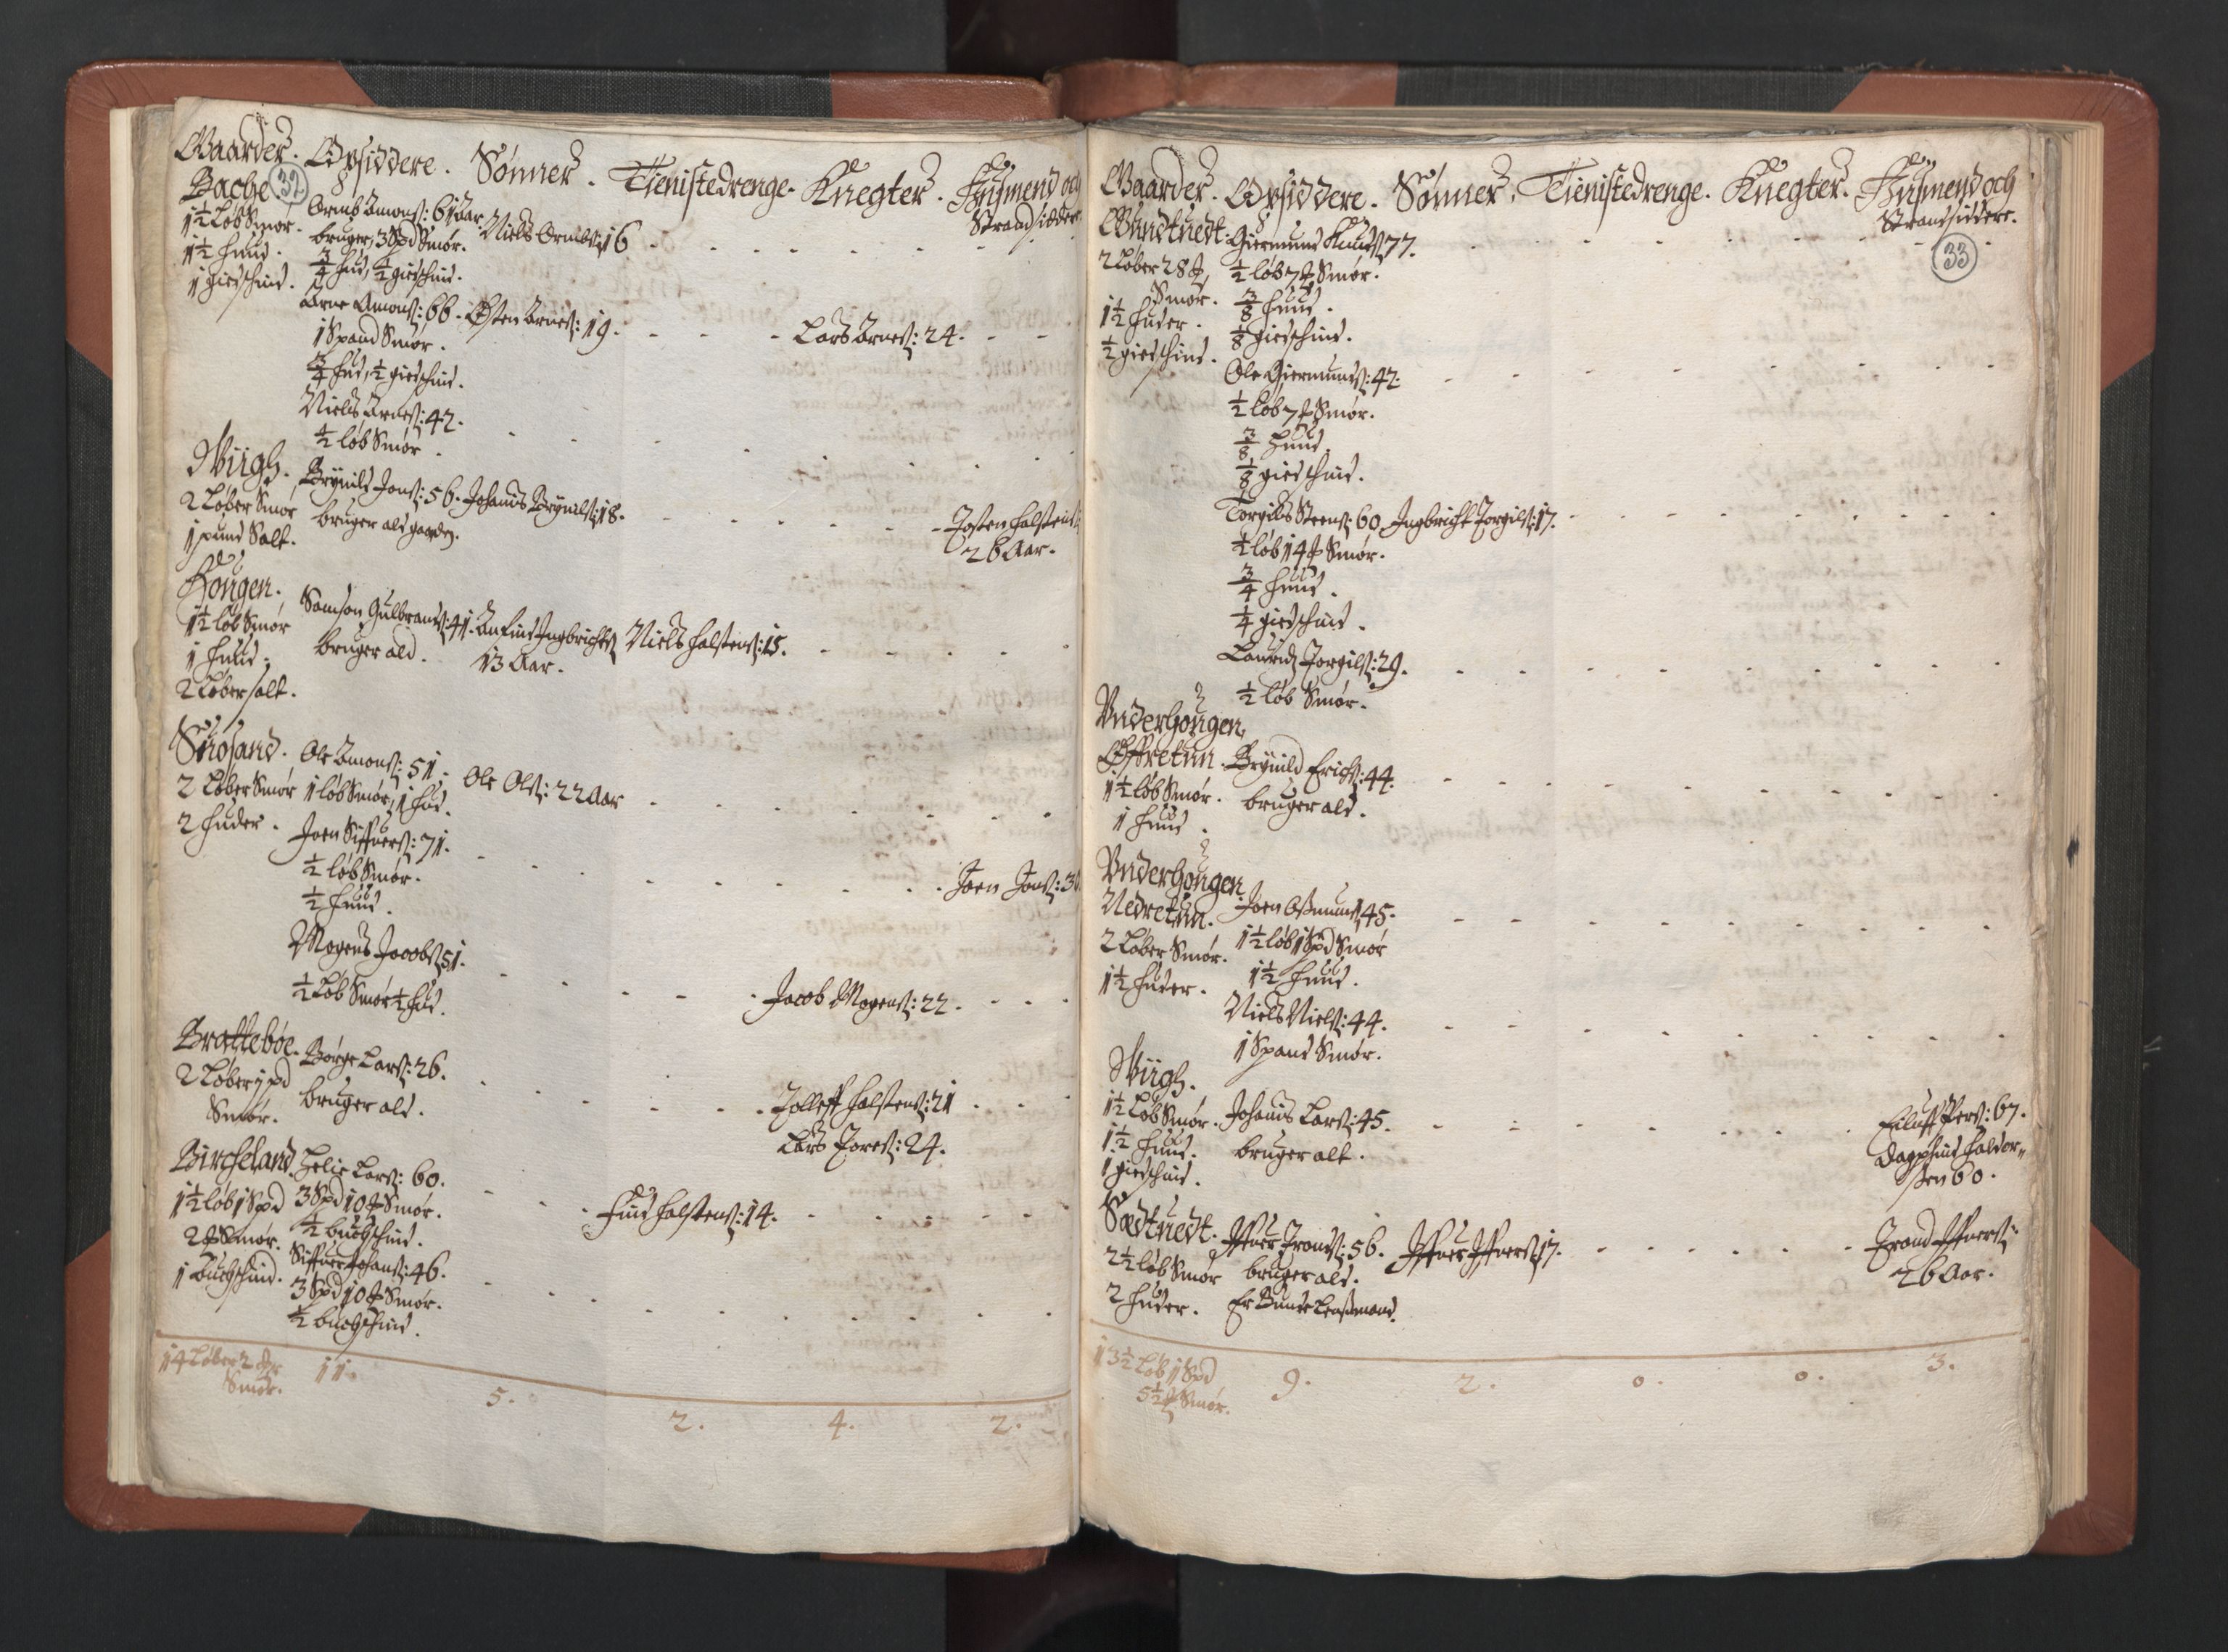 RA, Bailiff's Census 1664-1666, no. 14: Hardanger len, Ytre Sogn fogderi and Indre Sogn fogderi, 1664-1665, p. 32-33